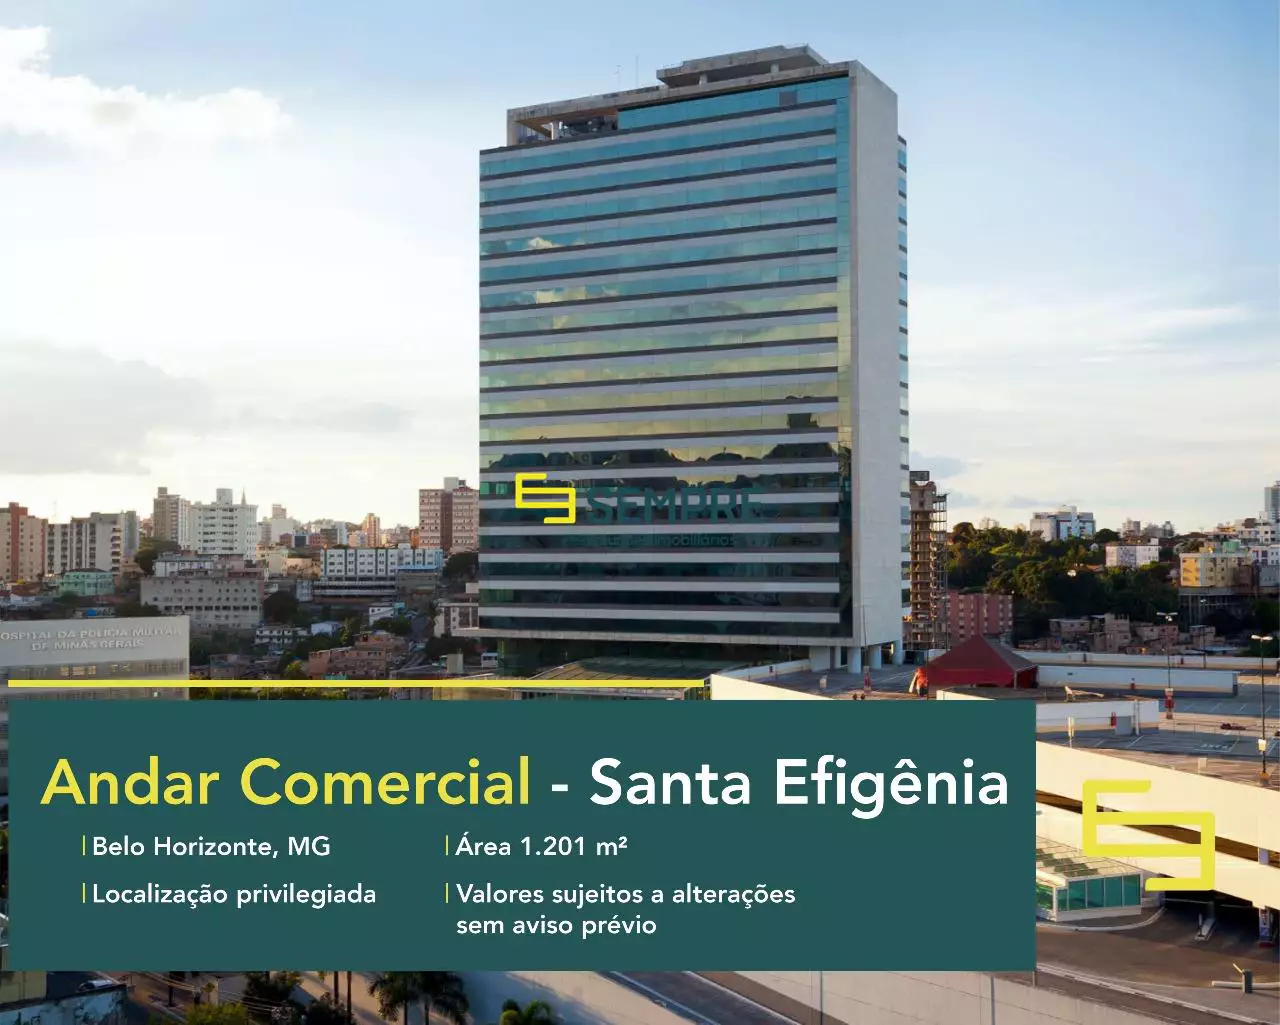 Andar comercial para locação no Santa Efigênia - Belo Horizonte. O estabelecimento comercial conta com área de 1.201,54 m².